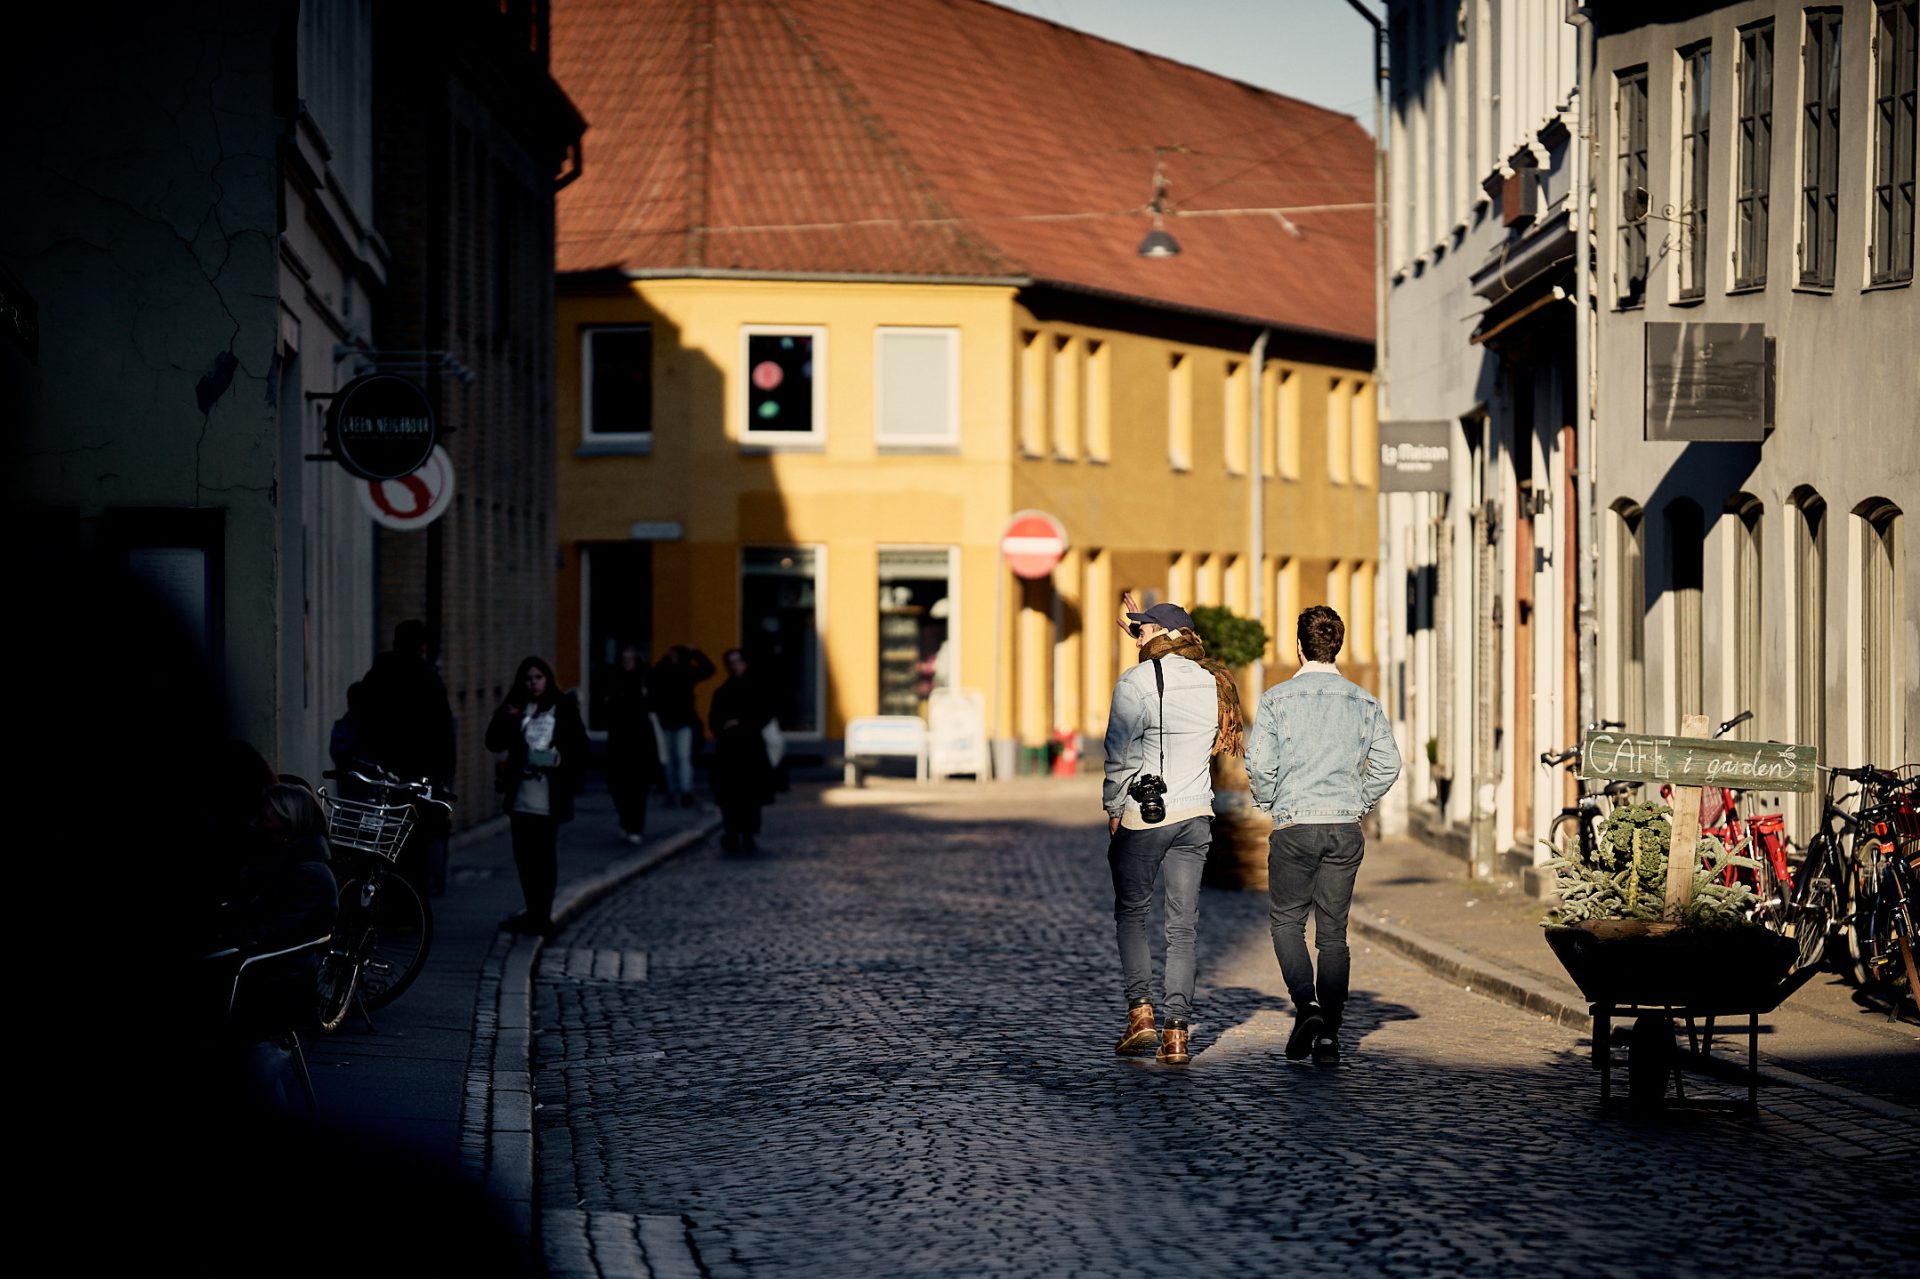 Streets of Aarhus